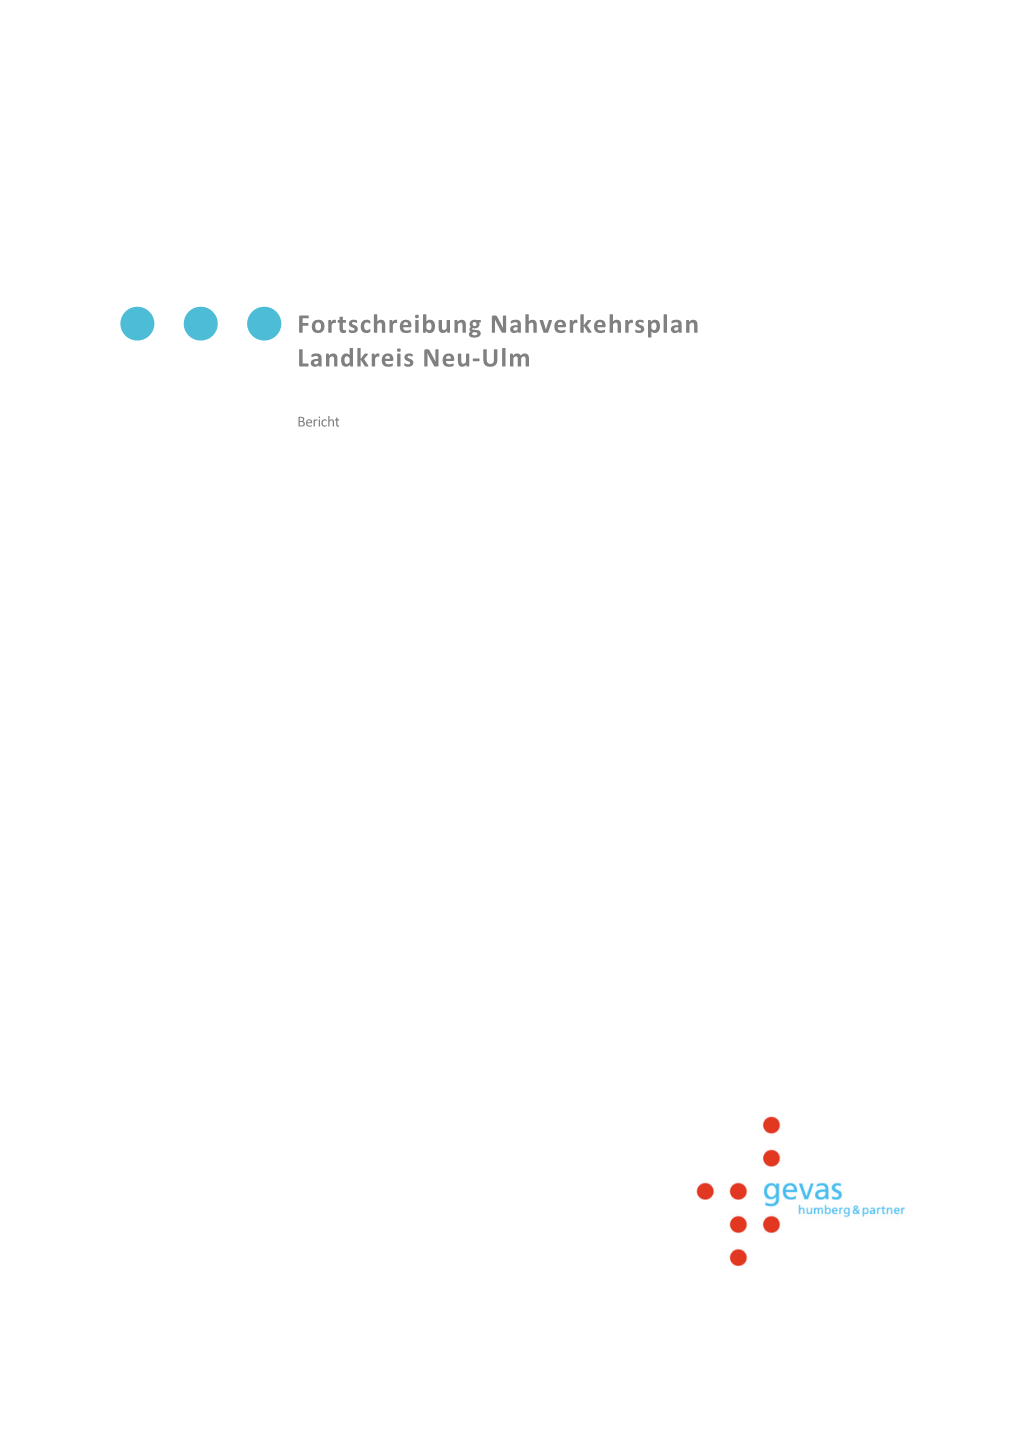 Fortschreibung Nahverkehrsplan Landkreis Neu-Ulm 2015